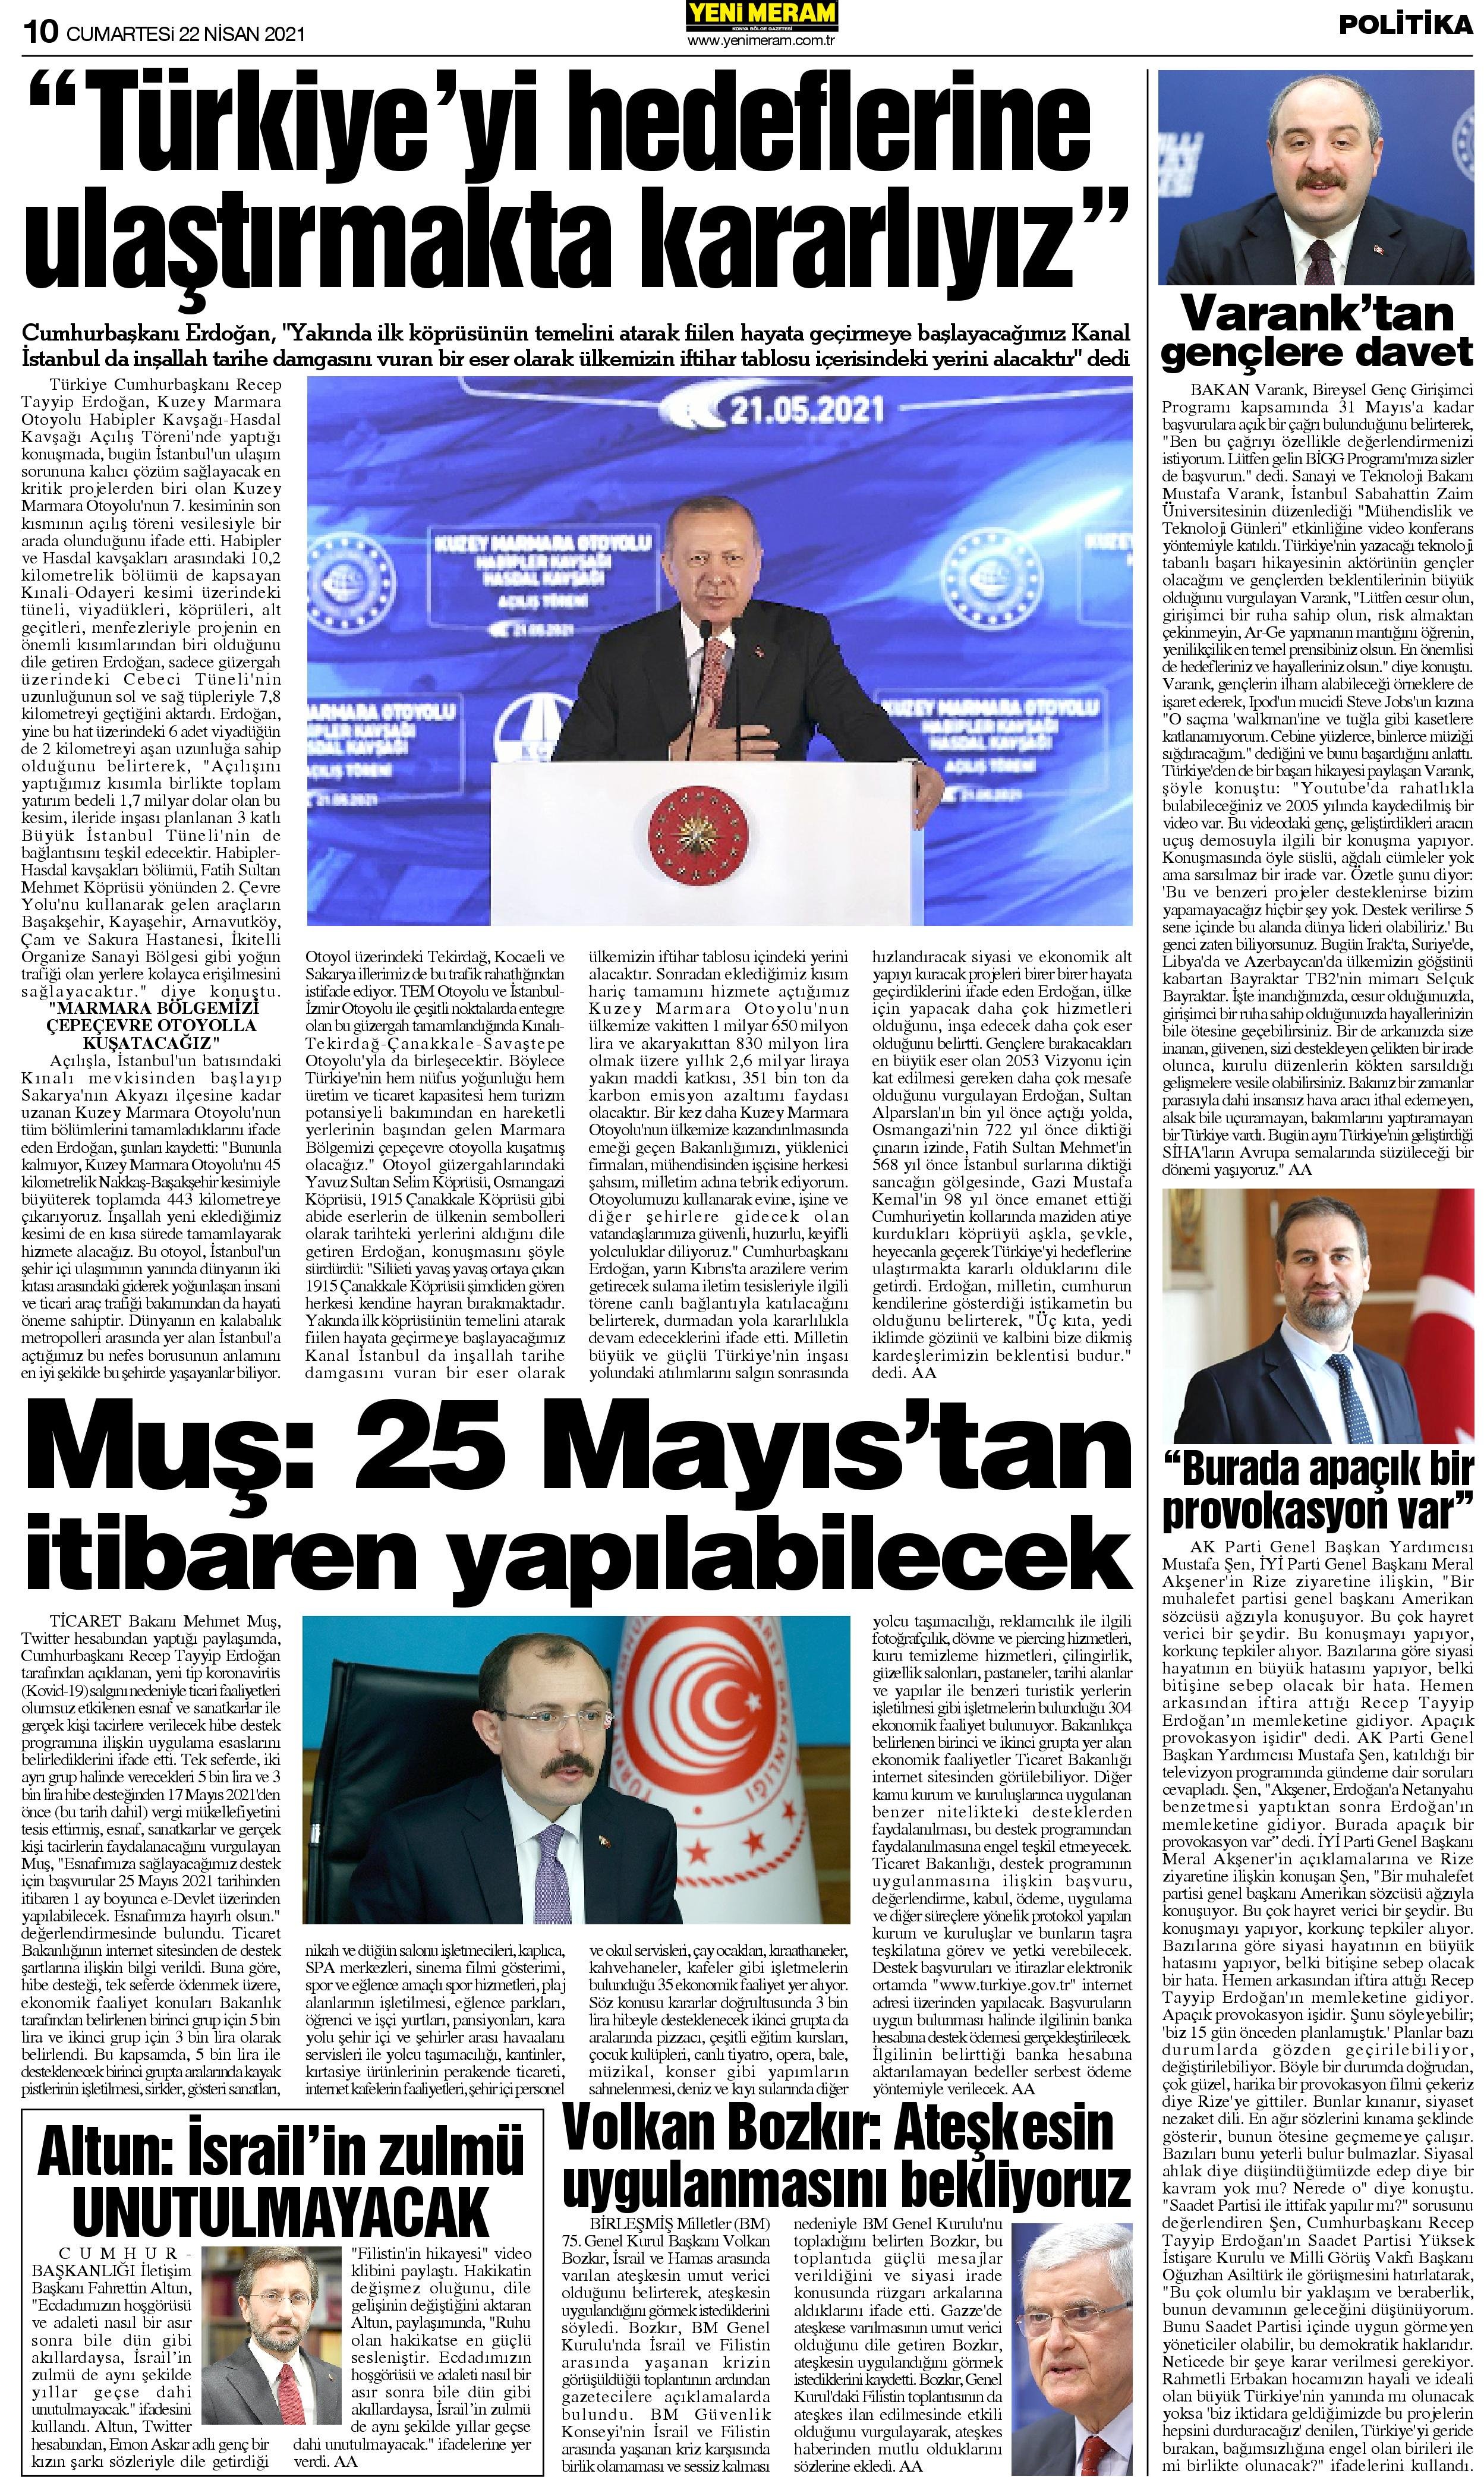 22 Mayıs 2021 Yeni Meram Gazetesi
